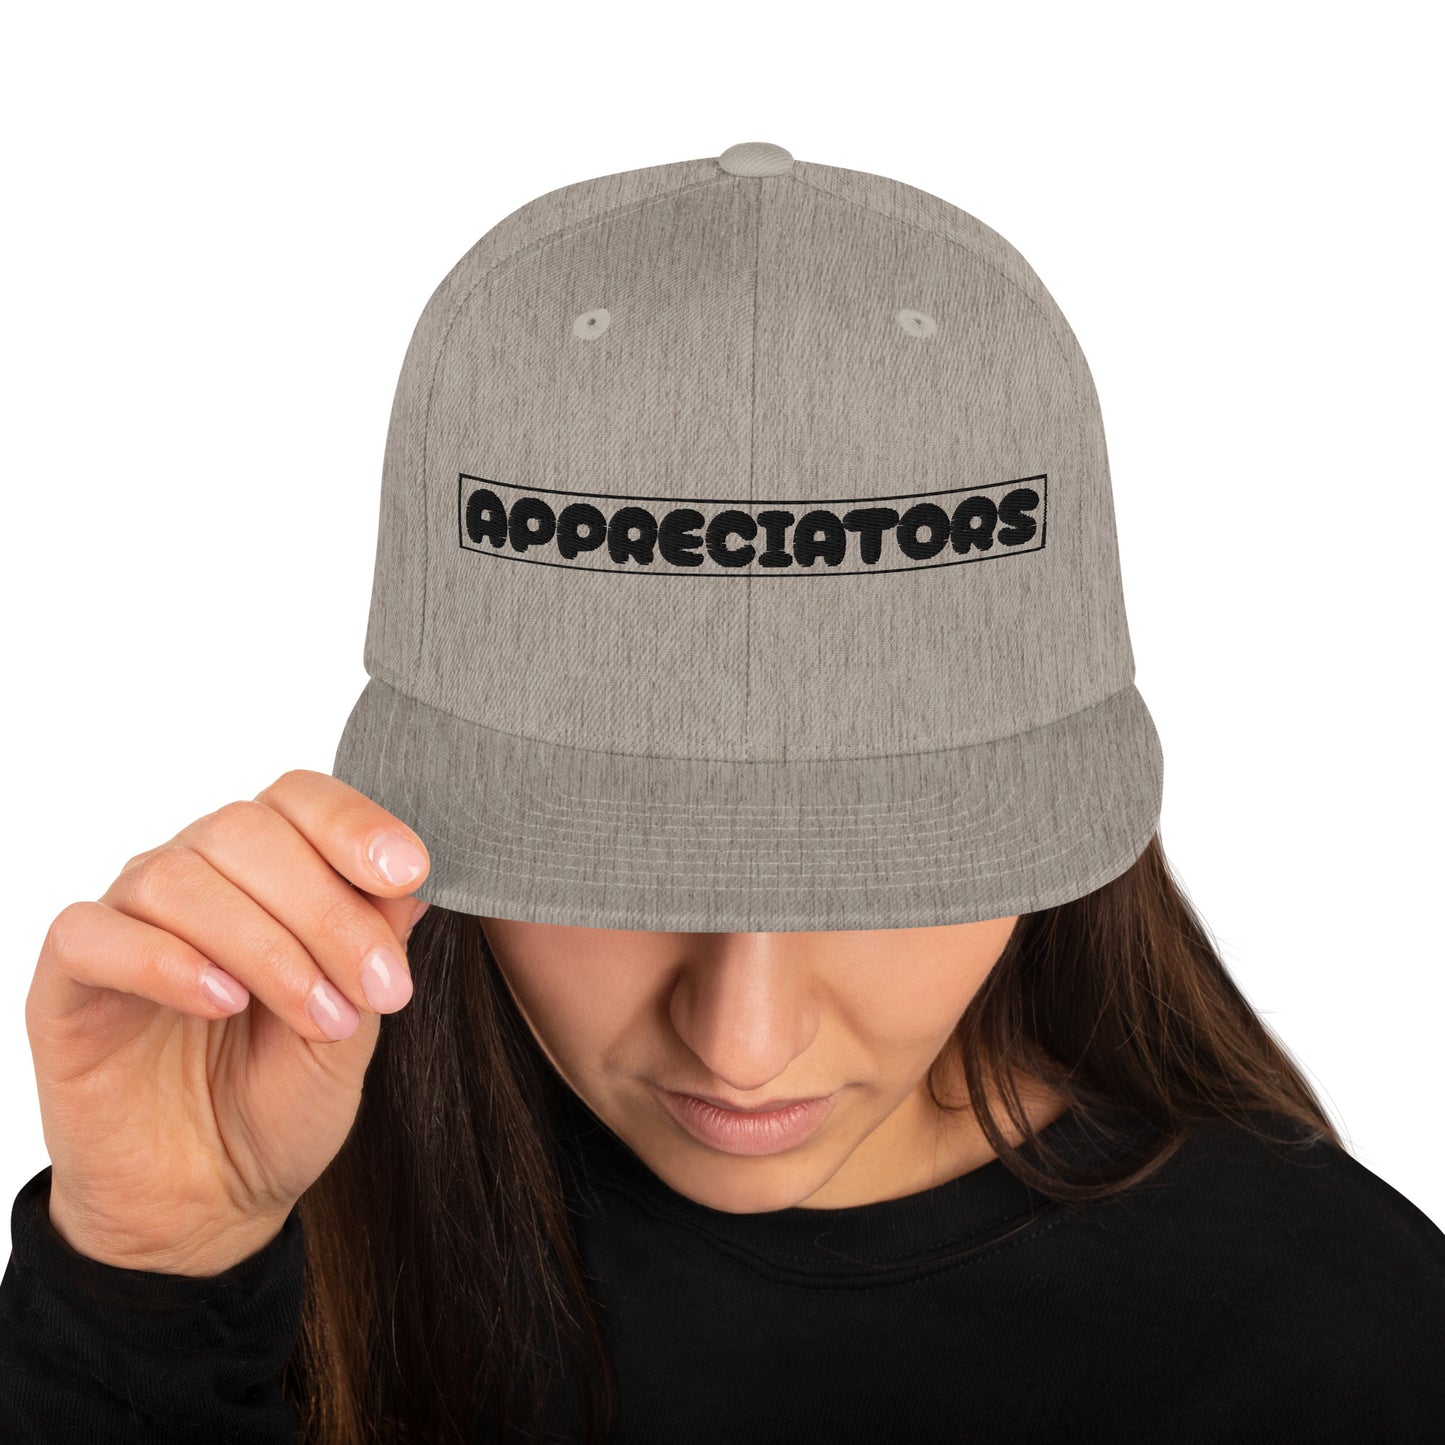 The Appreciators Companion Text Box Embroidered Snapback Hat